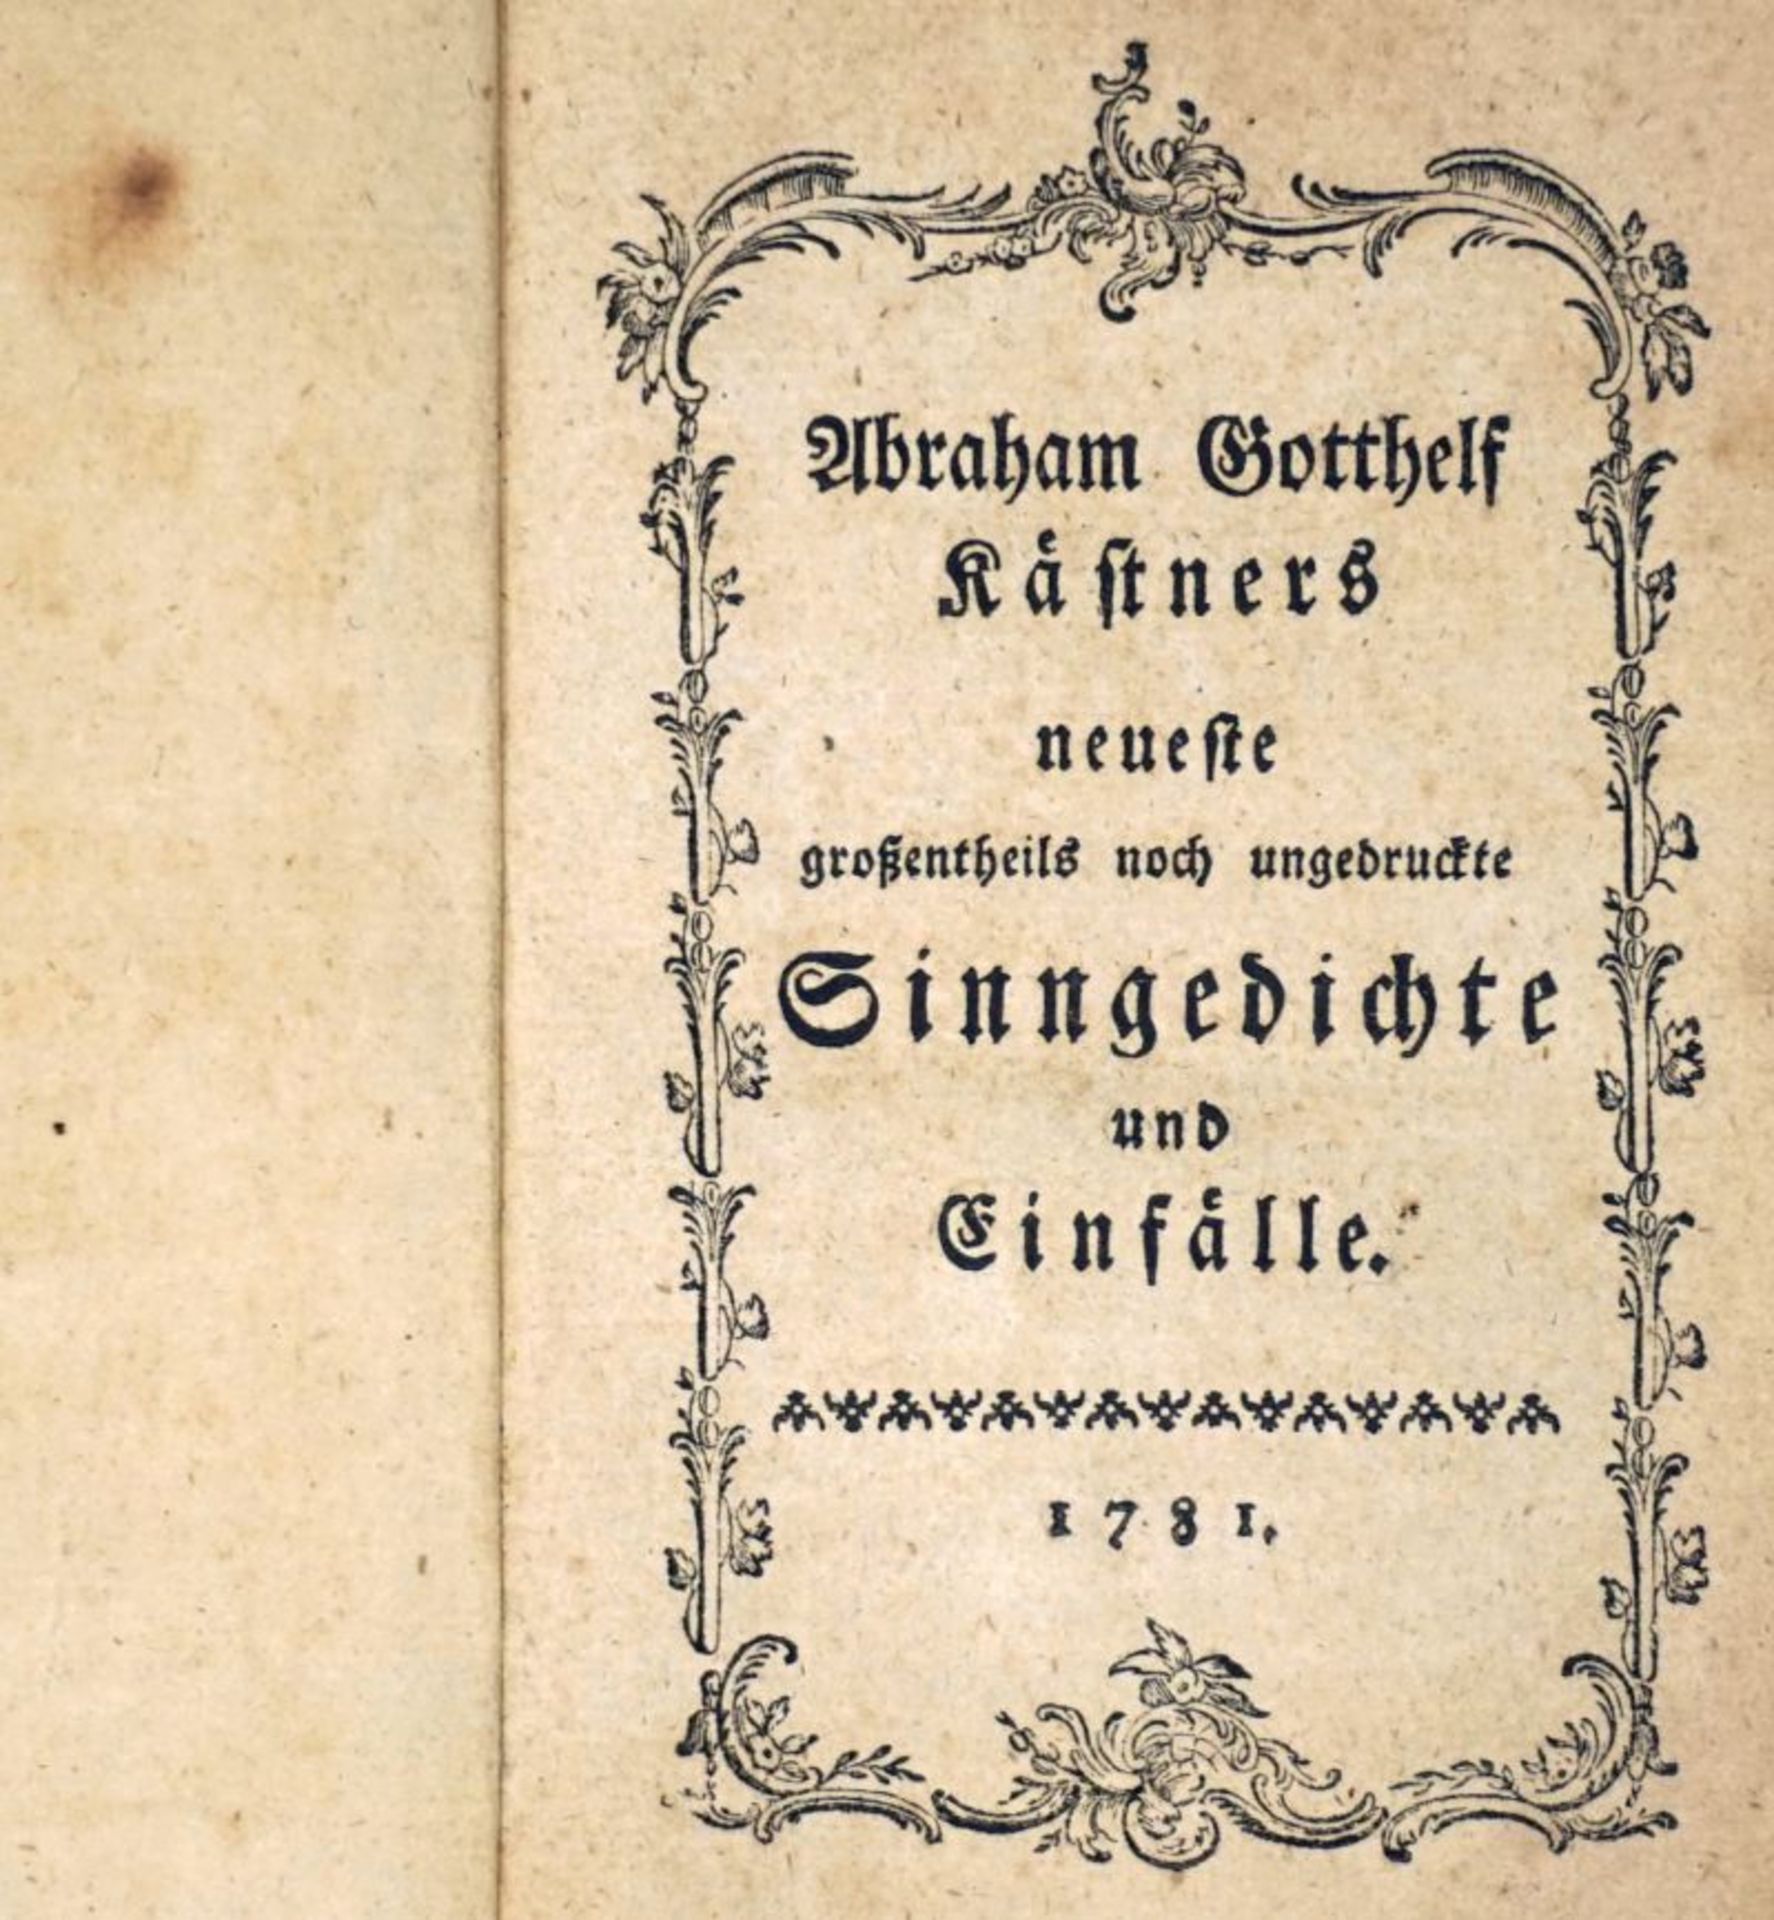 Kästner, Abraham Gotthelf: Neueste großentheils noch ungedruckte Sinngedichte und E...